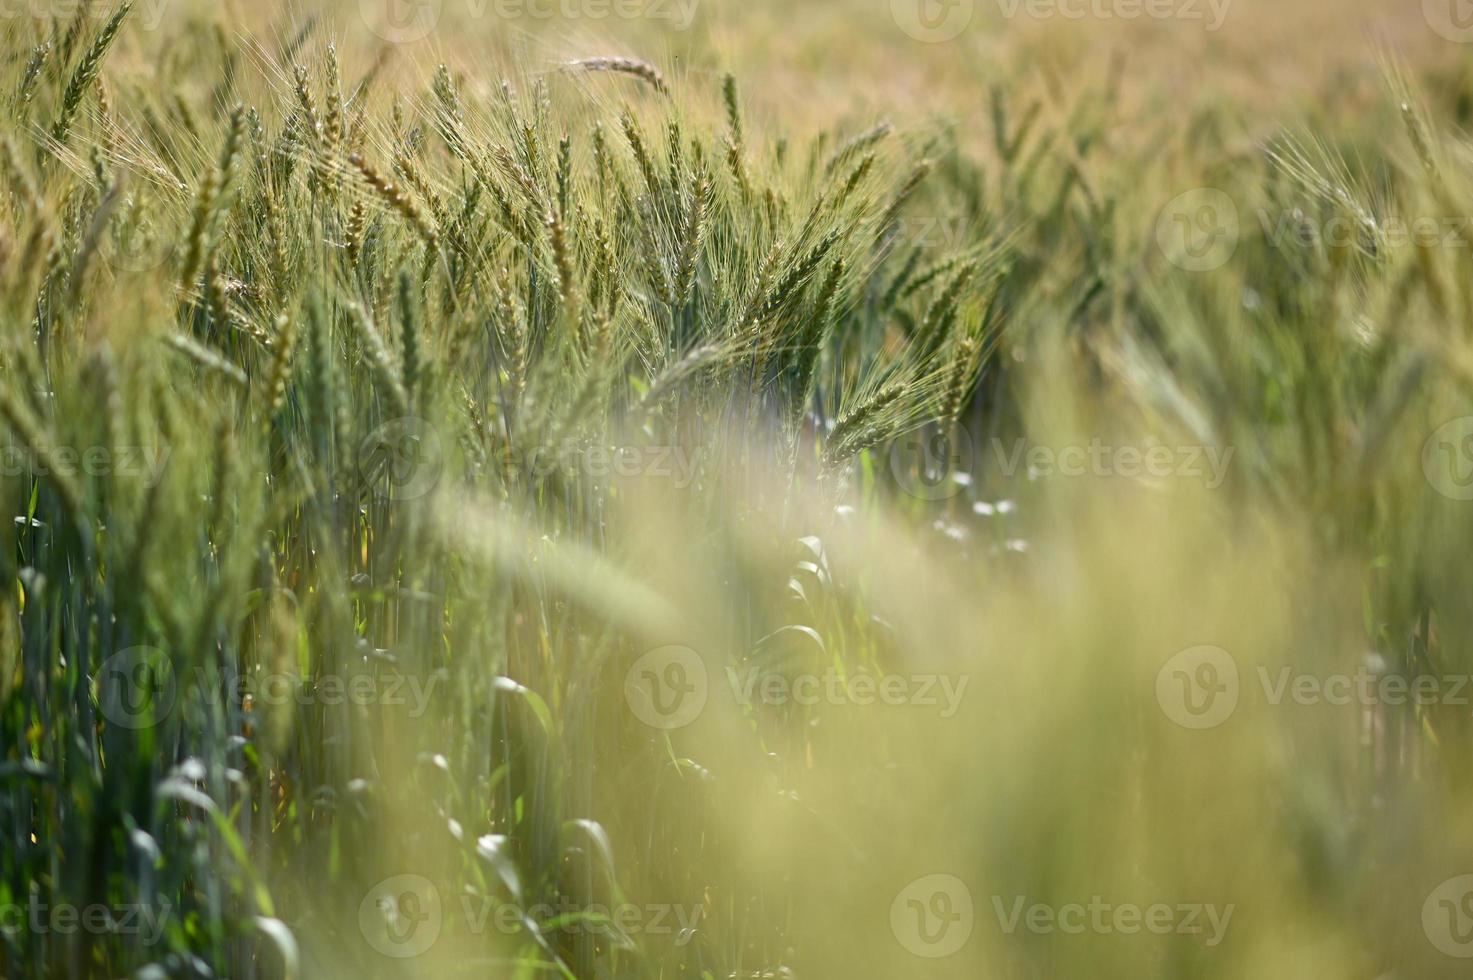 Barley blurred background. photo